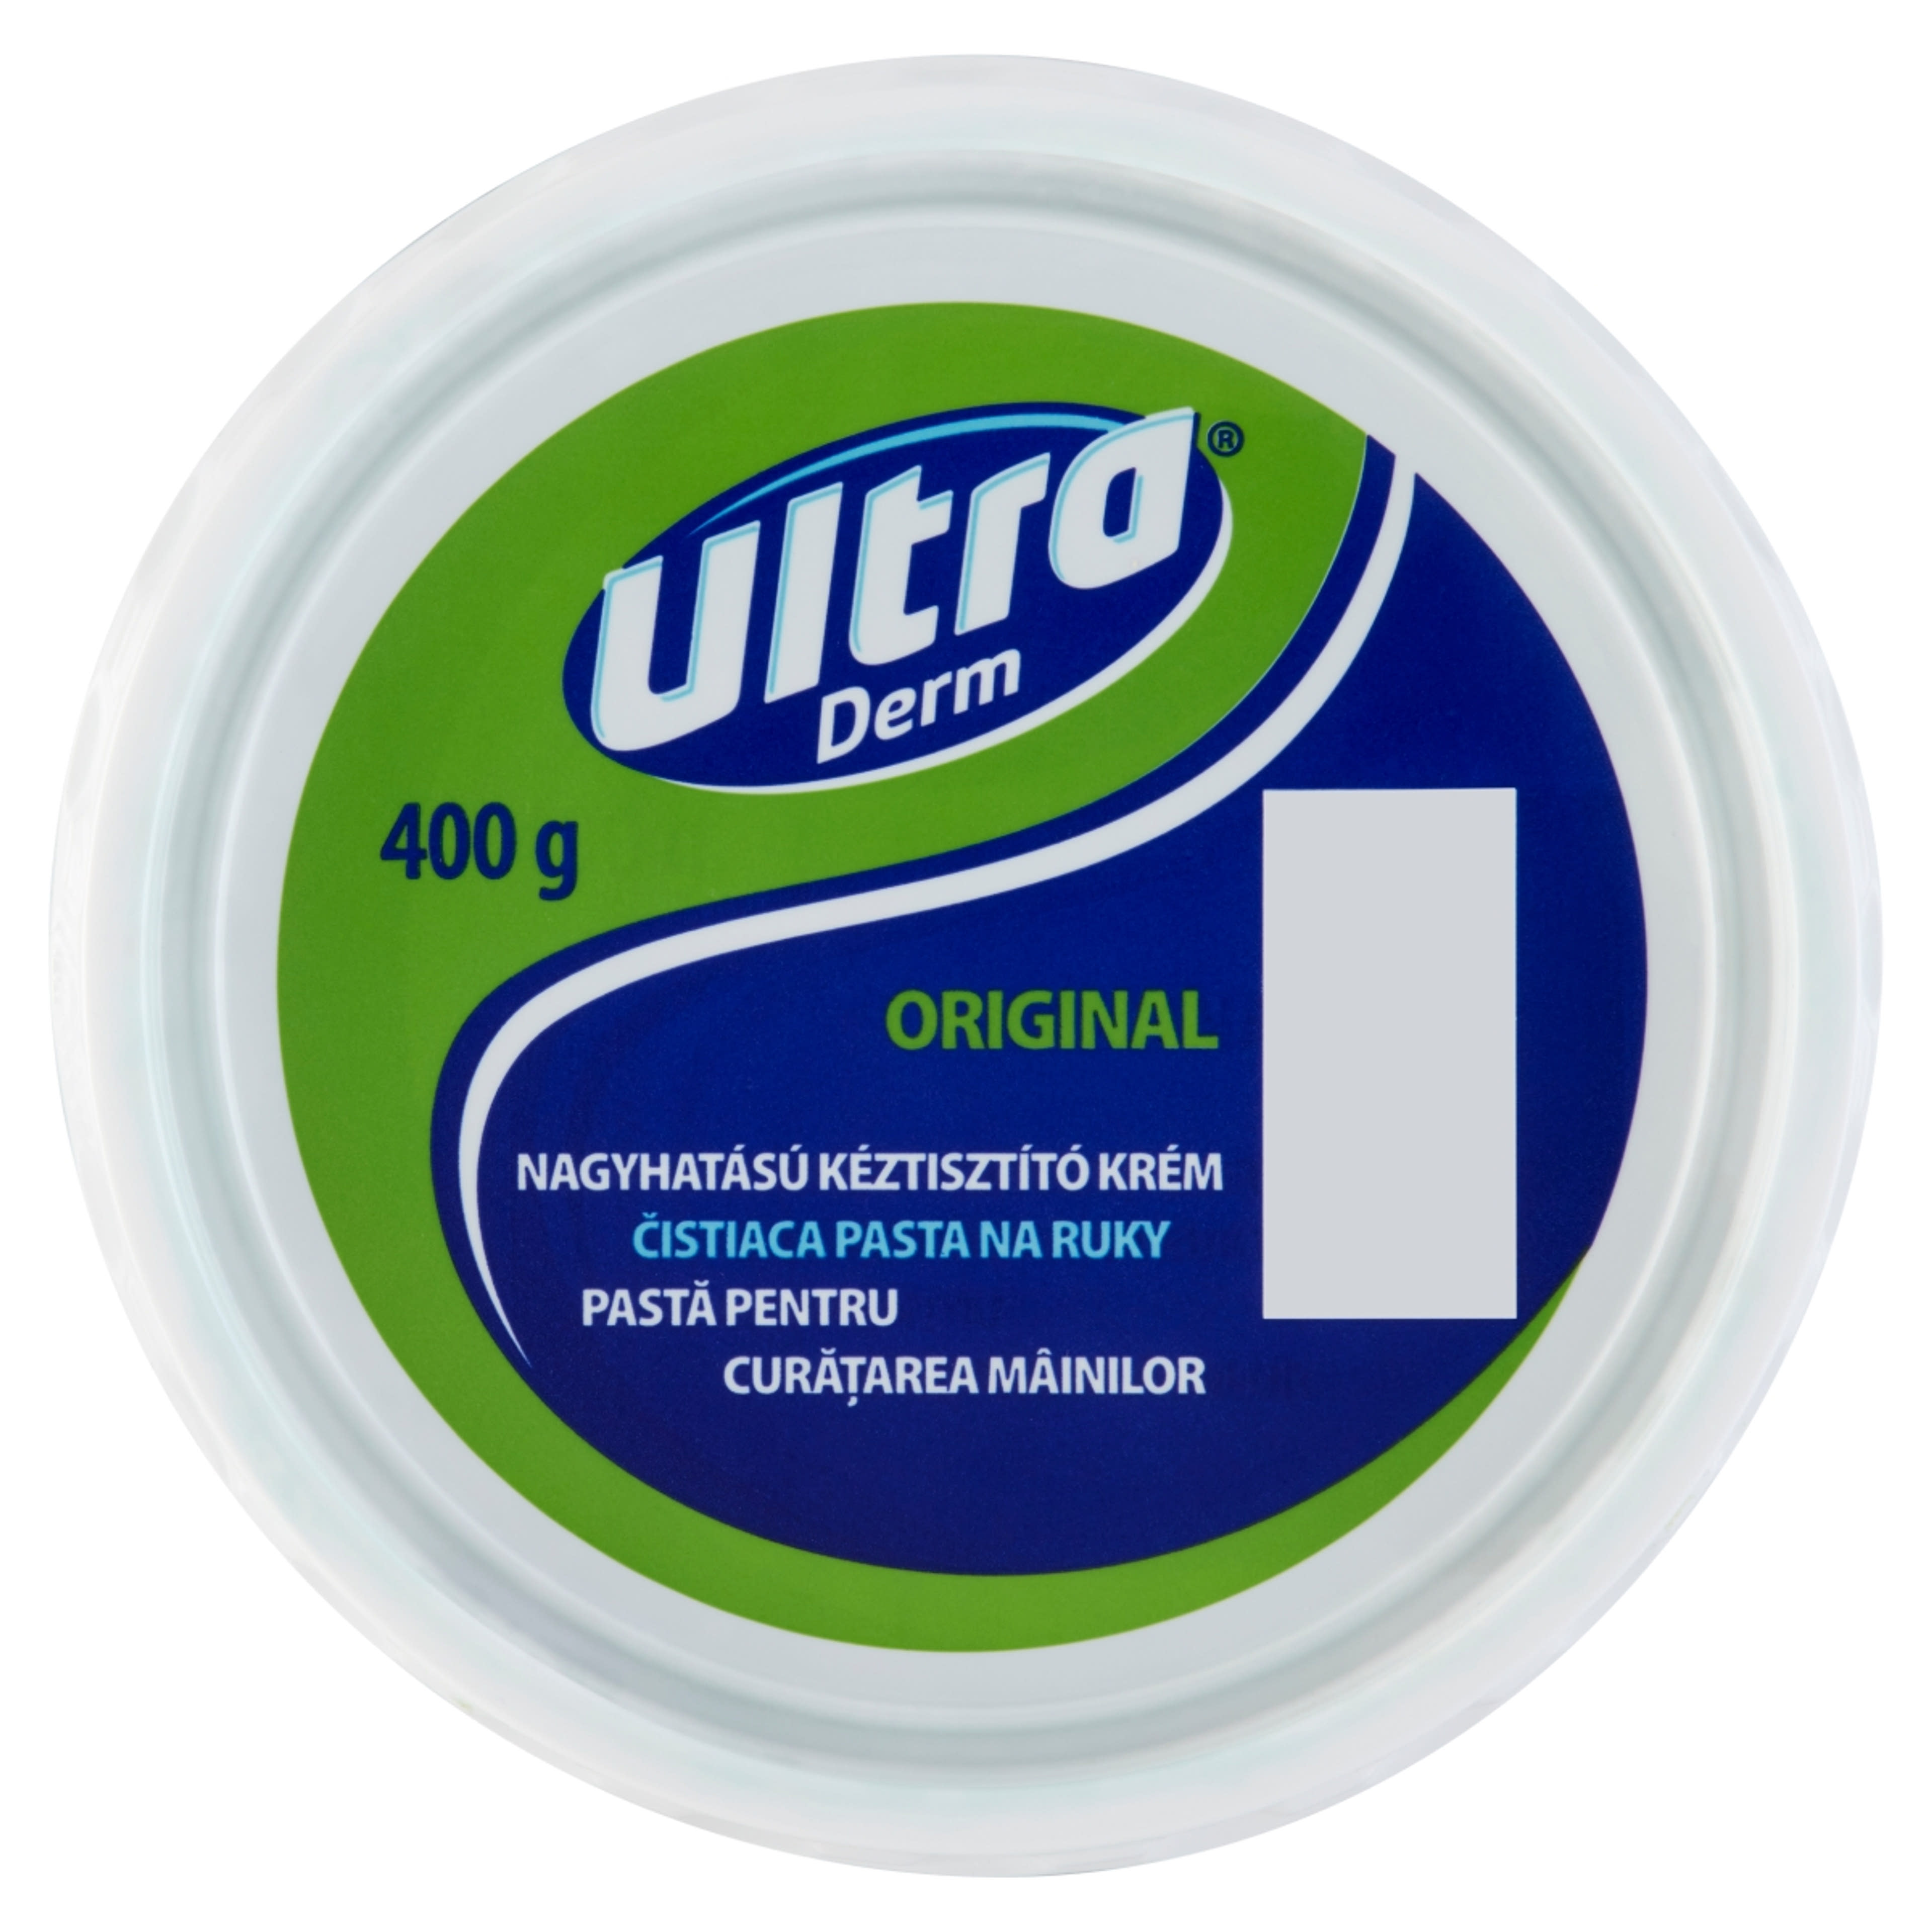 Ultra Derm Original Nagyhatású Kéztisztító Krém - 400 g